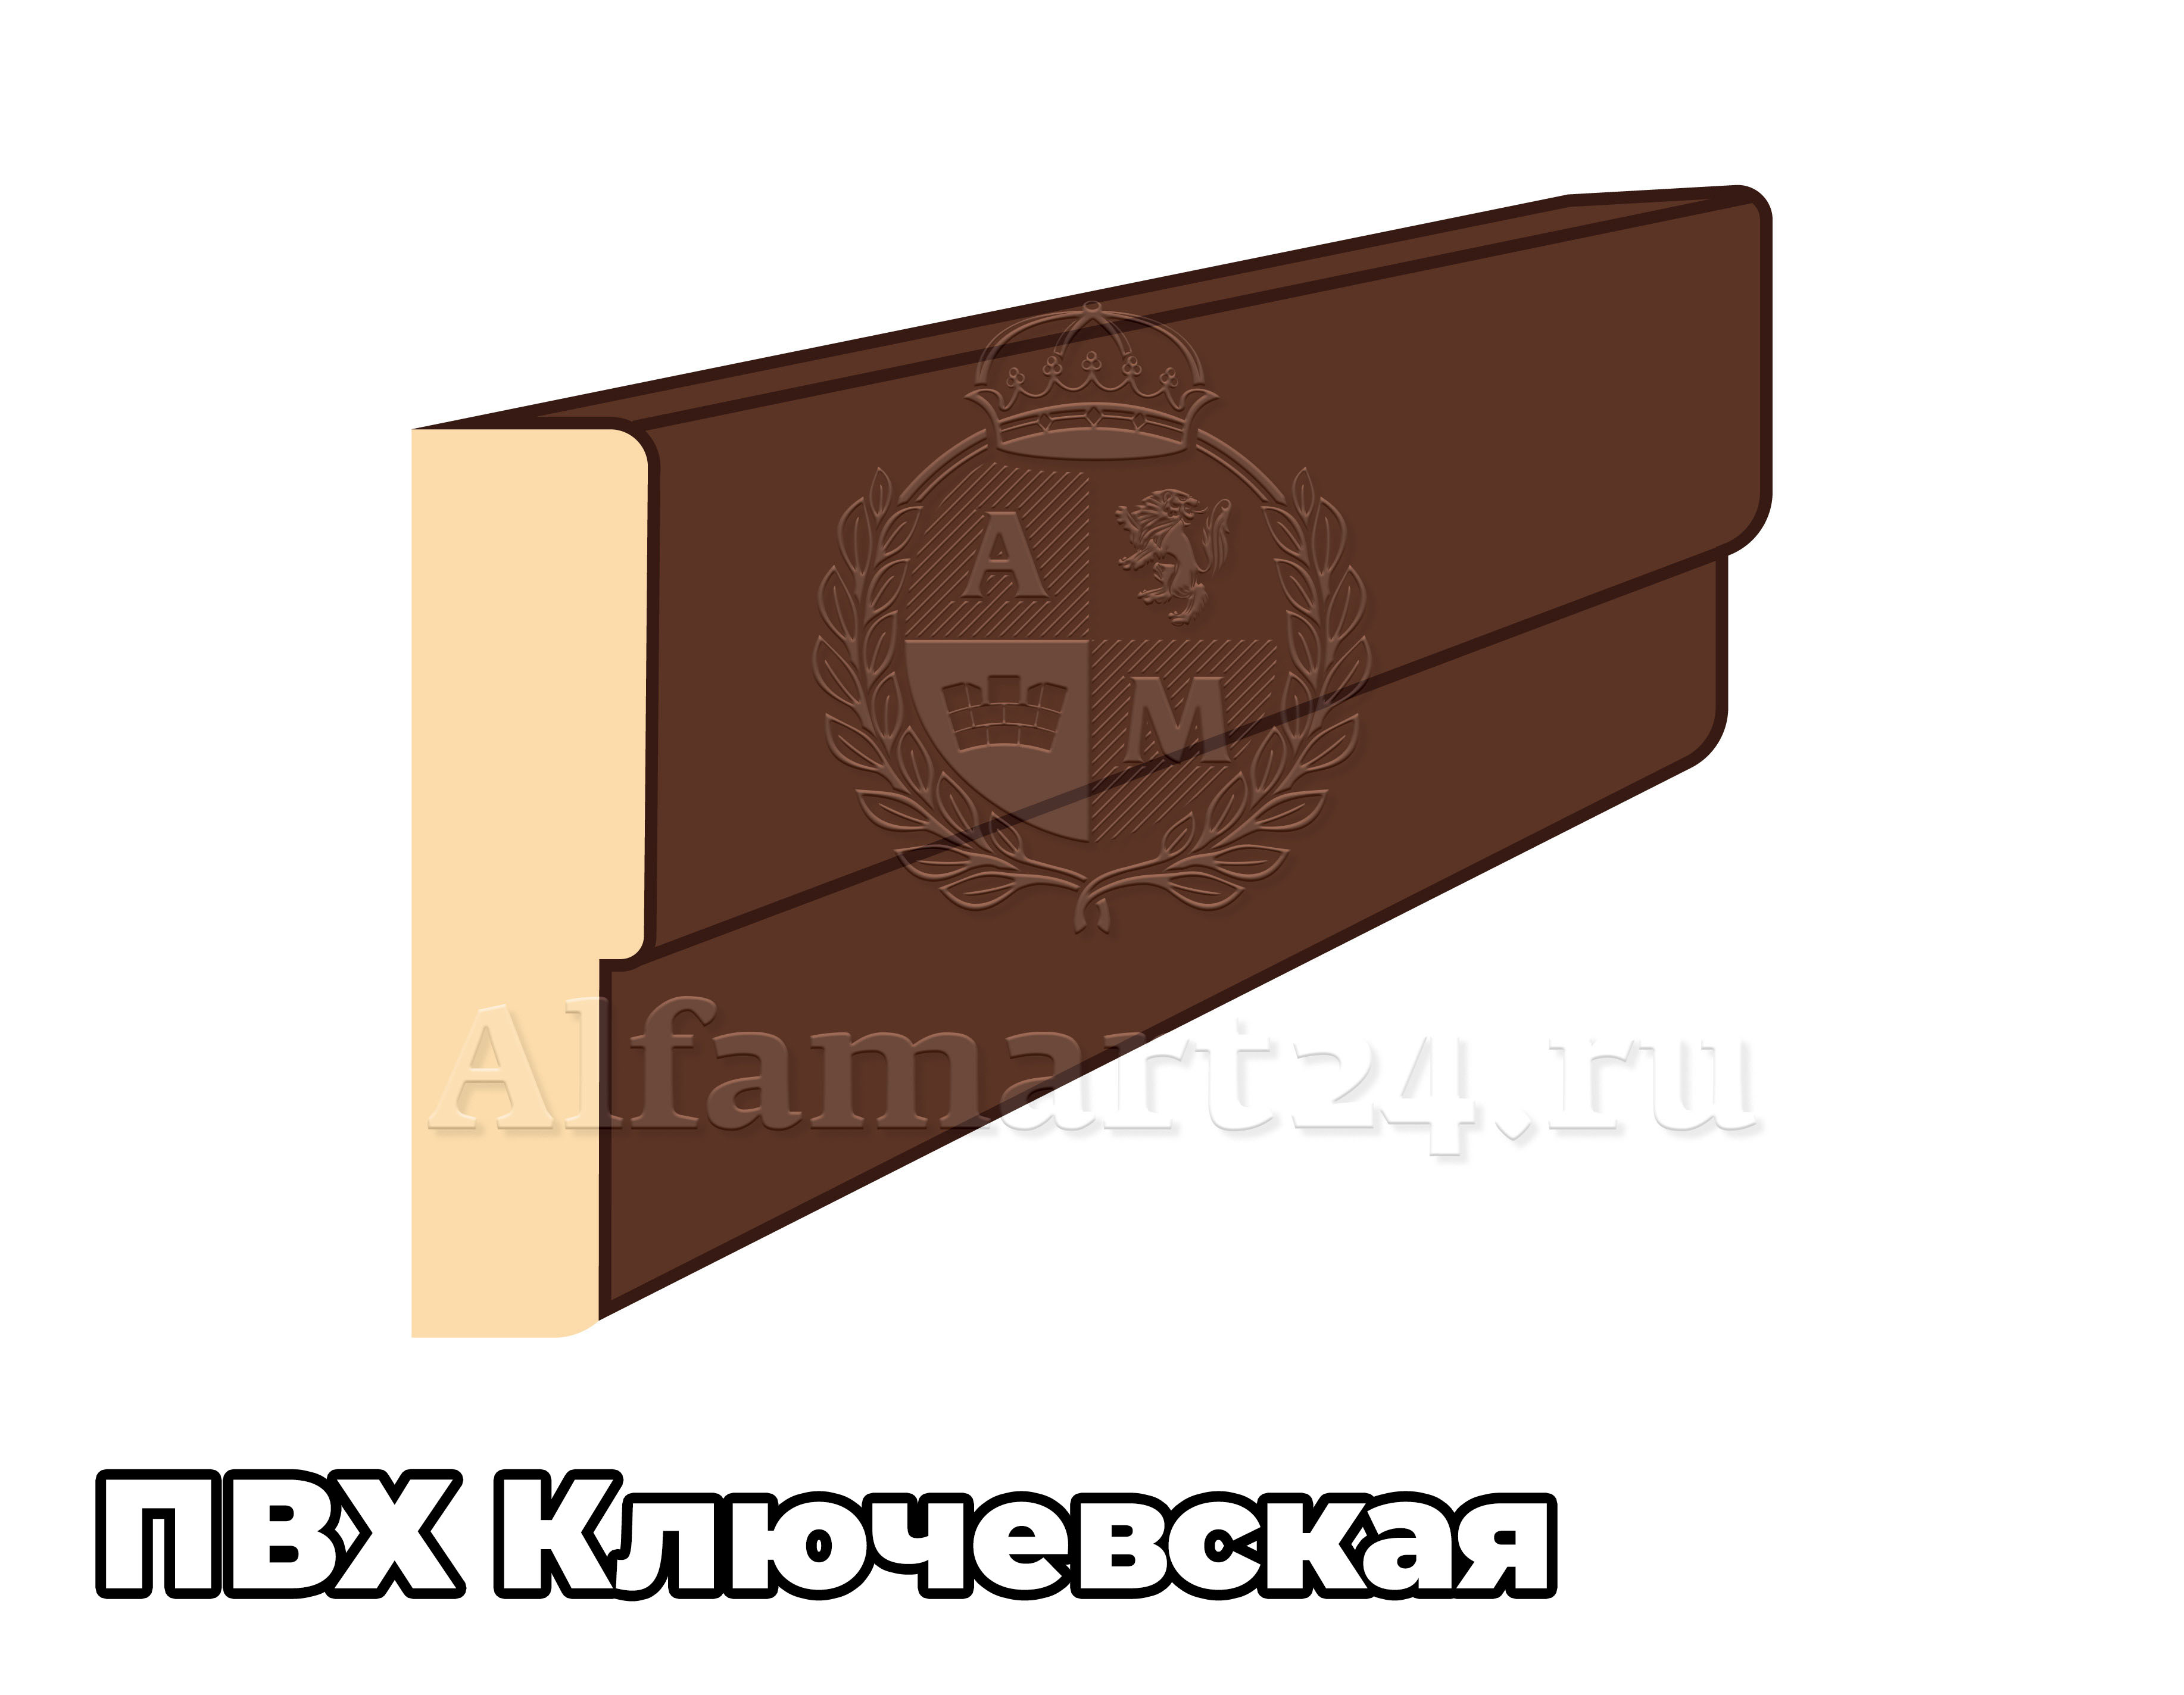 Коробка Ключевская 30х70х2200 (В цвет двери) - 1 штука